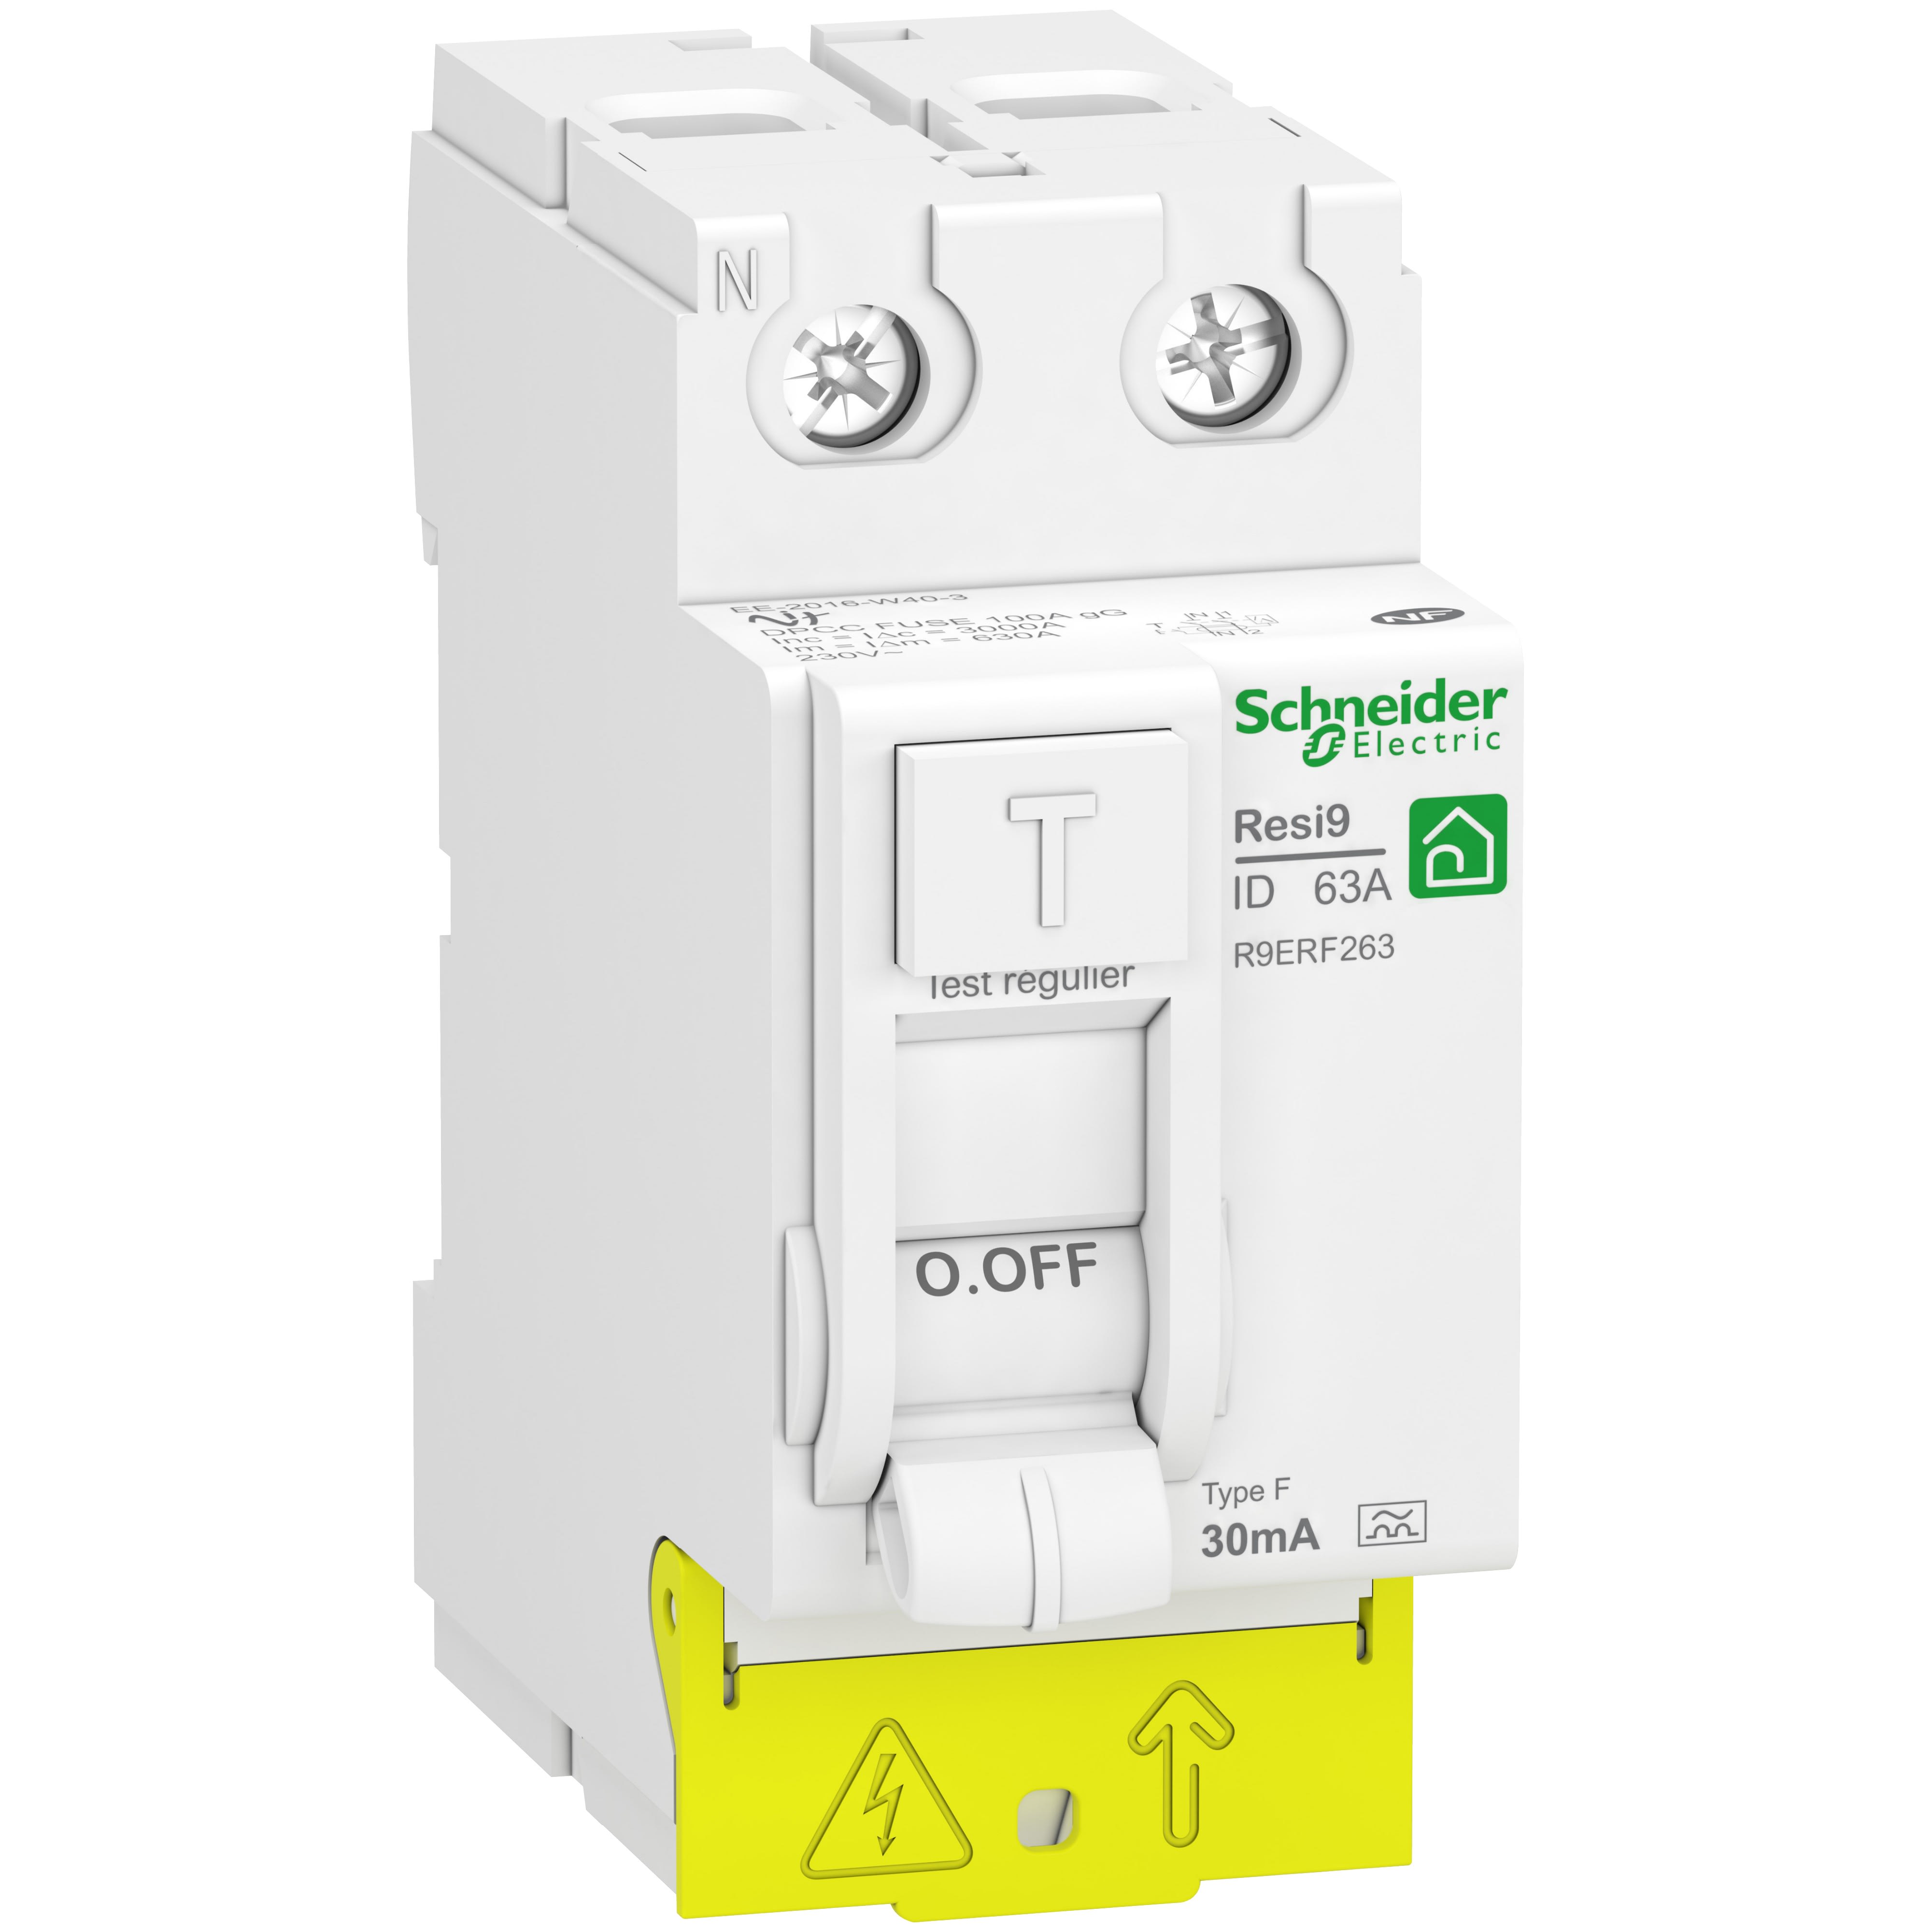 Schneider Electric - RESI9 - interrupteur differentiel - 2P - -63A - 30mA - Type Fsi - peignable